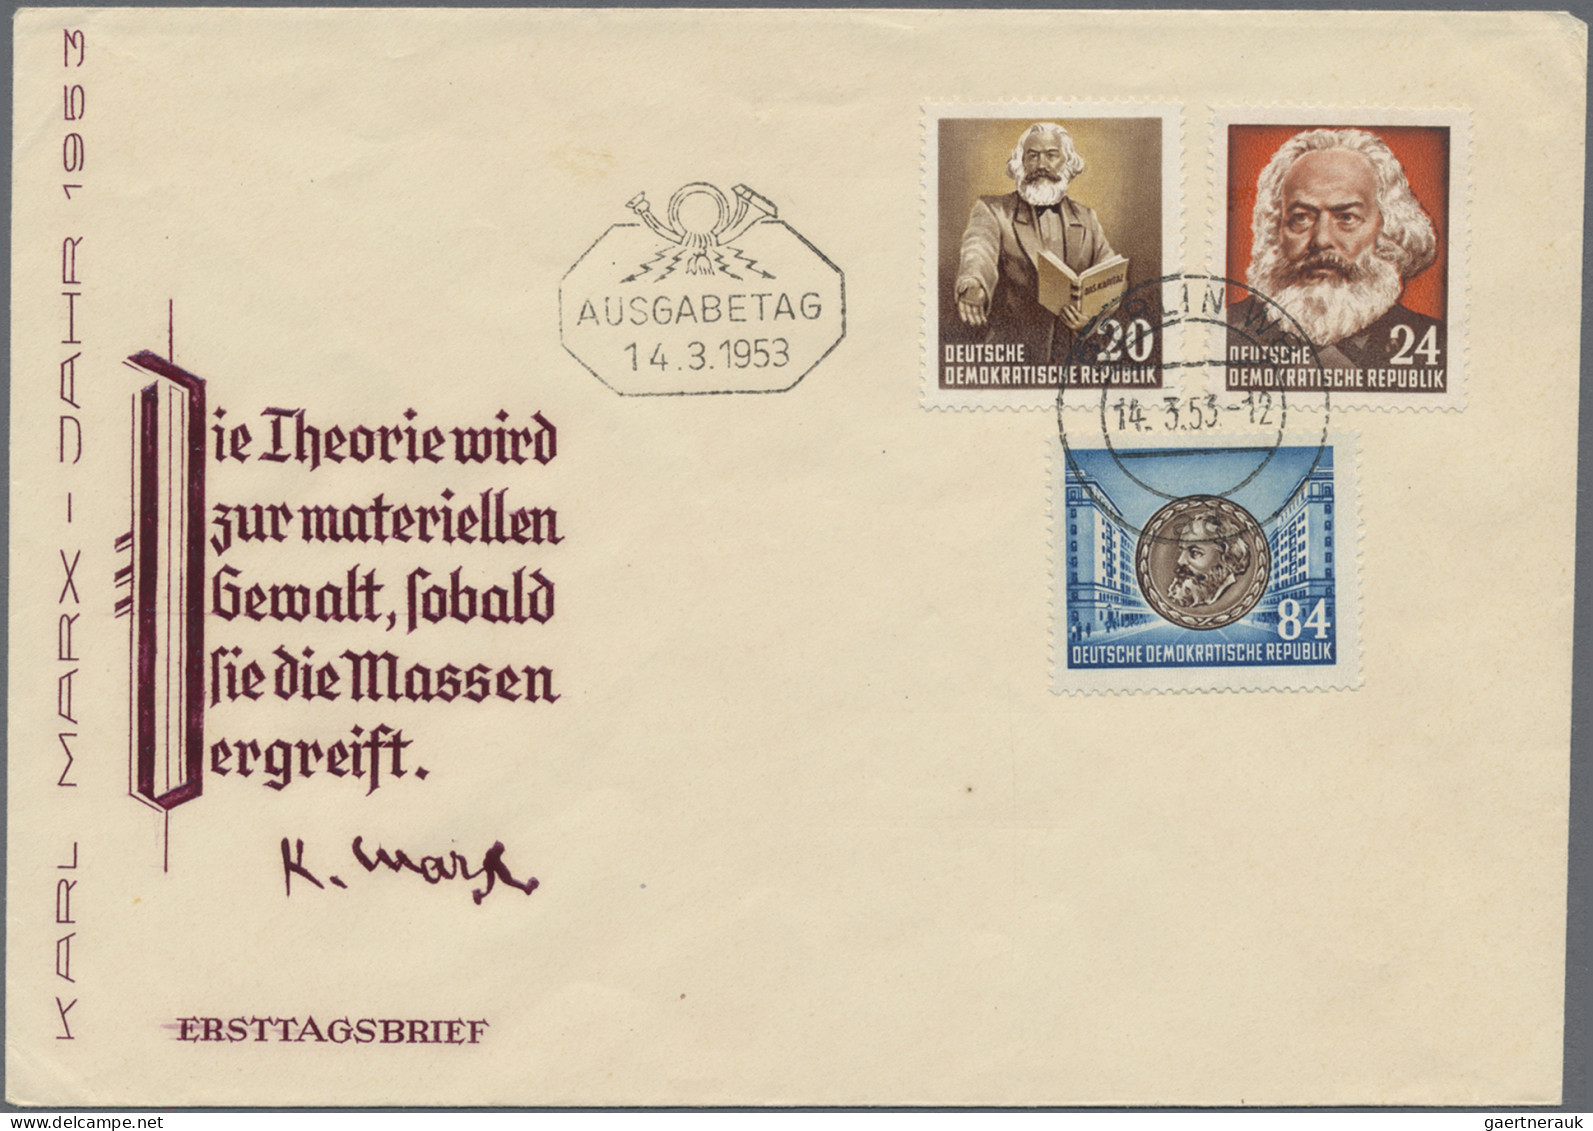 DDR: 1950/1990 (ca.), umfangreicher Bestand von ca. 330 (meist philatelistischen